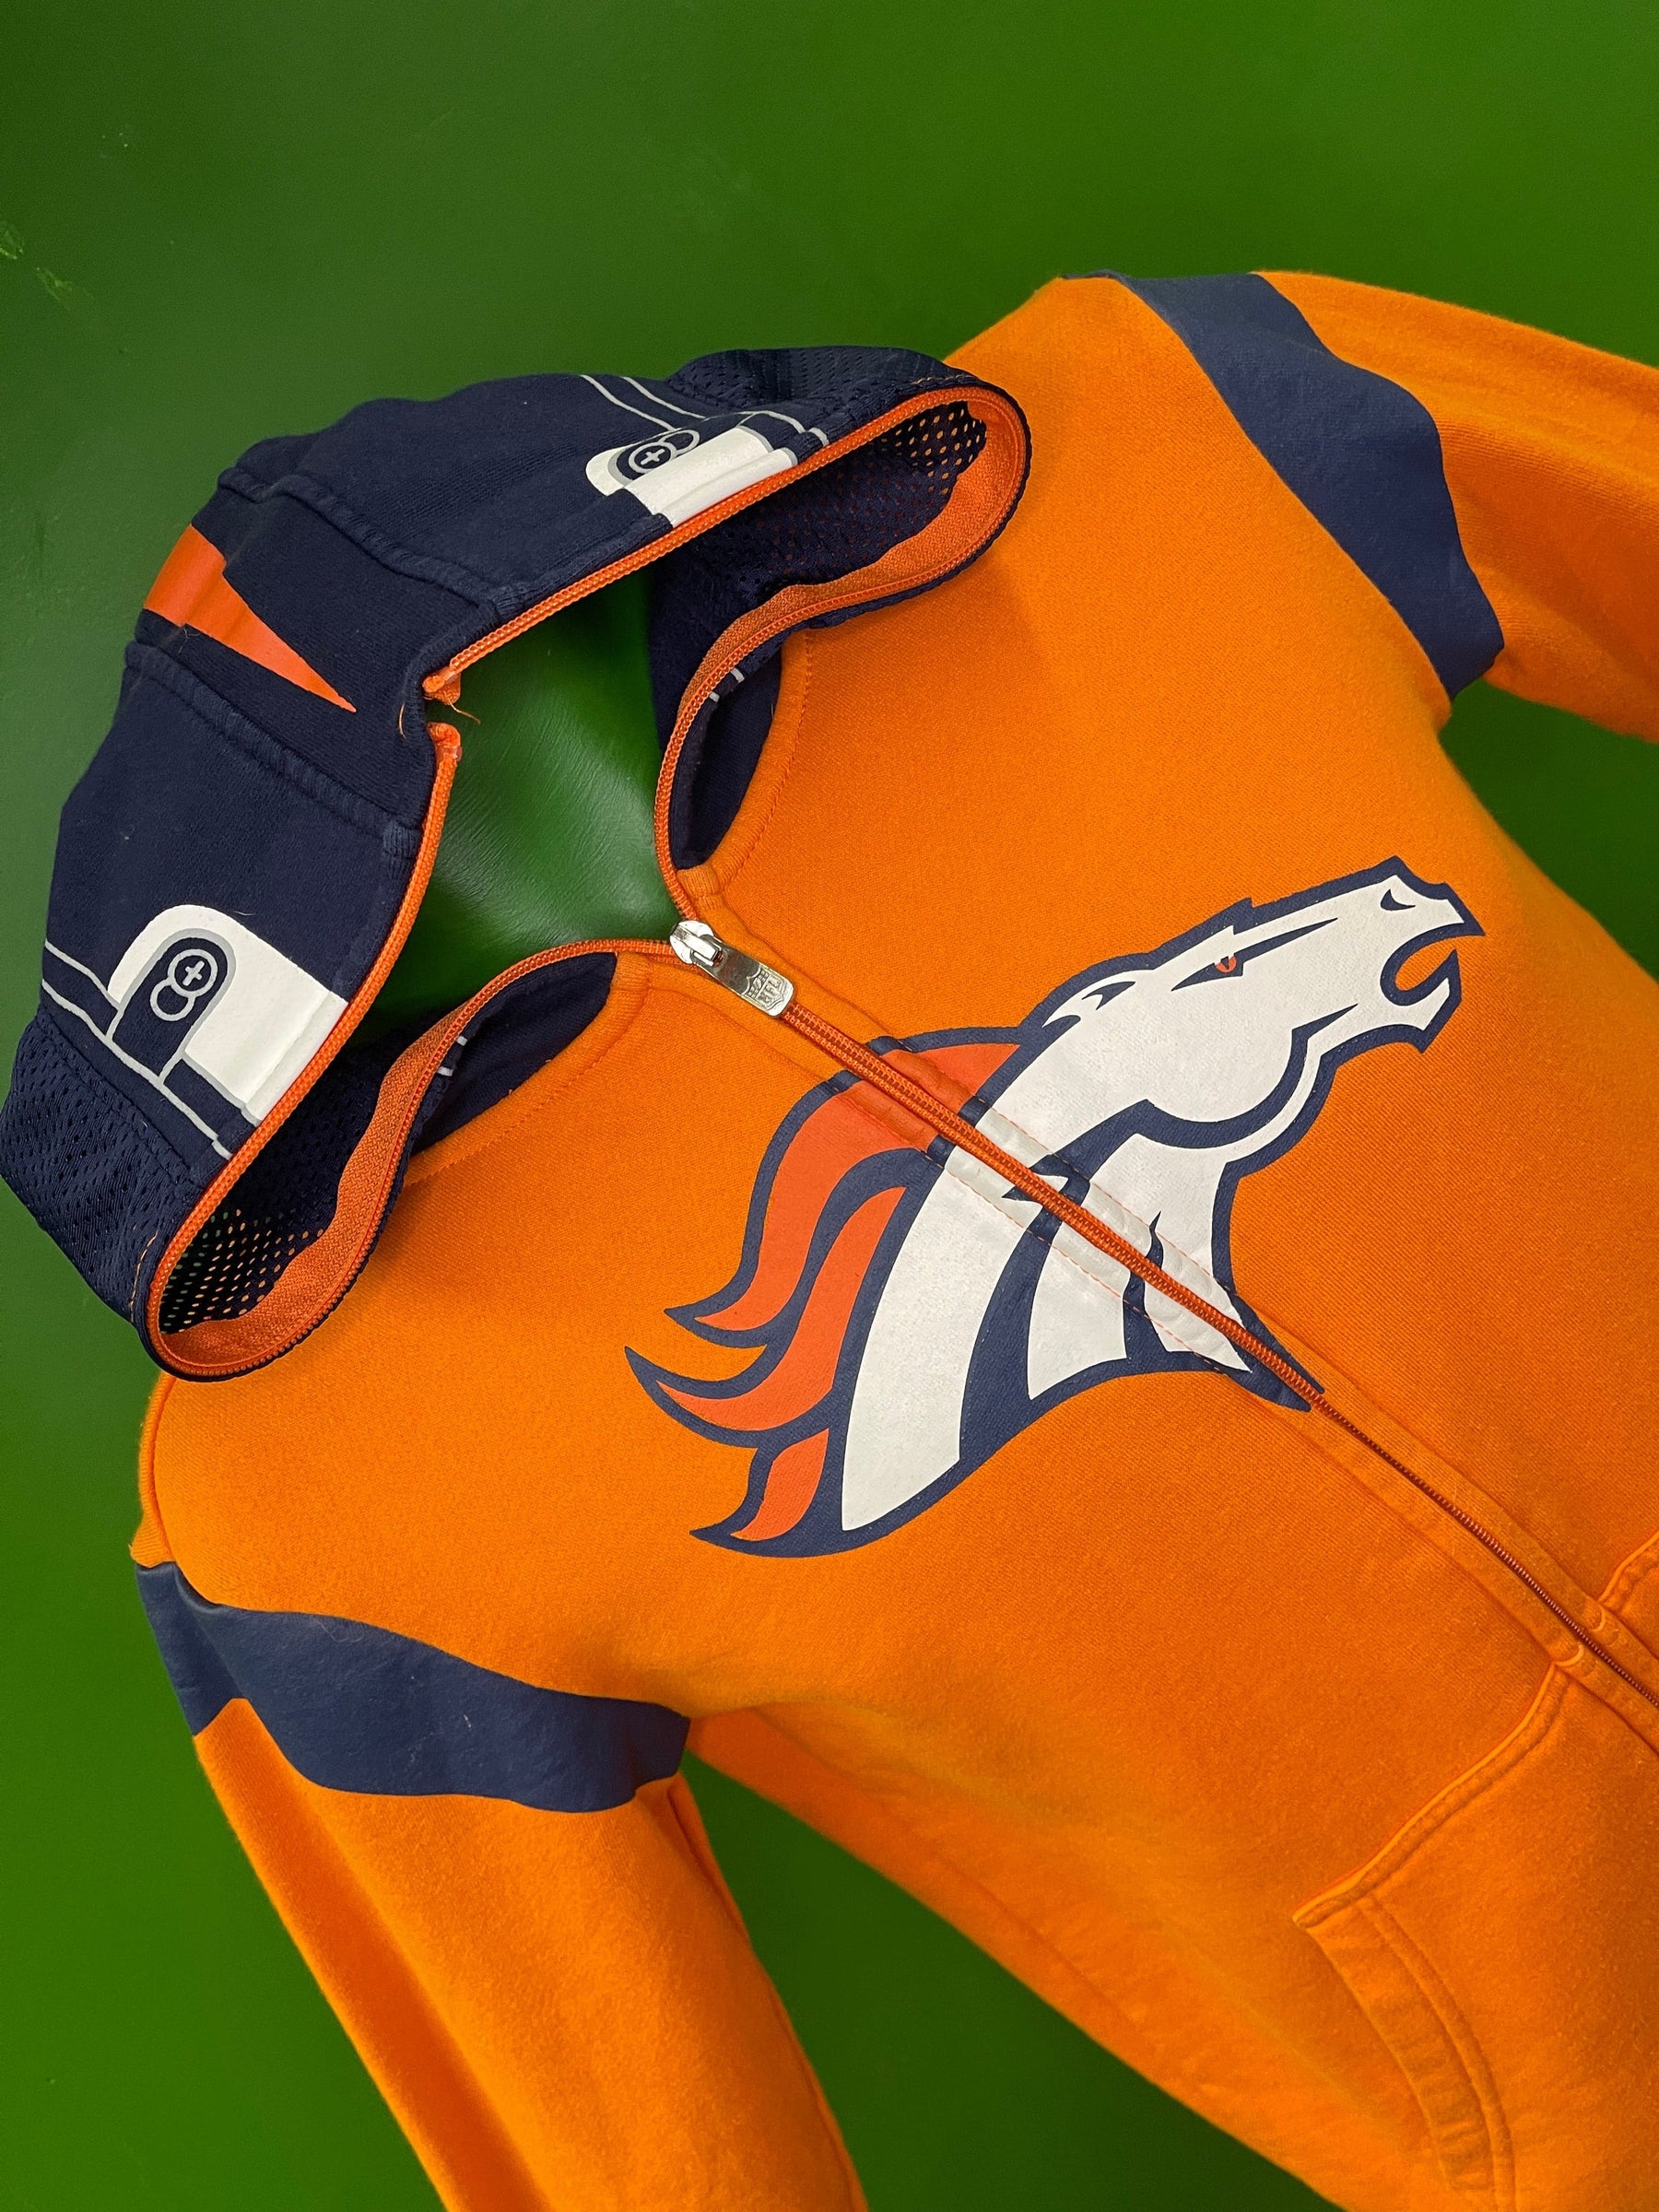 NFL Denver Broncos Full-Zip Helmet Pattern Hoodie Youth Medium 10-12